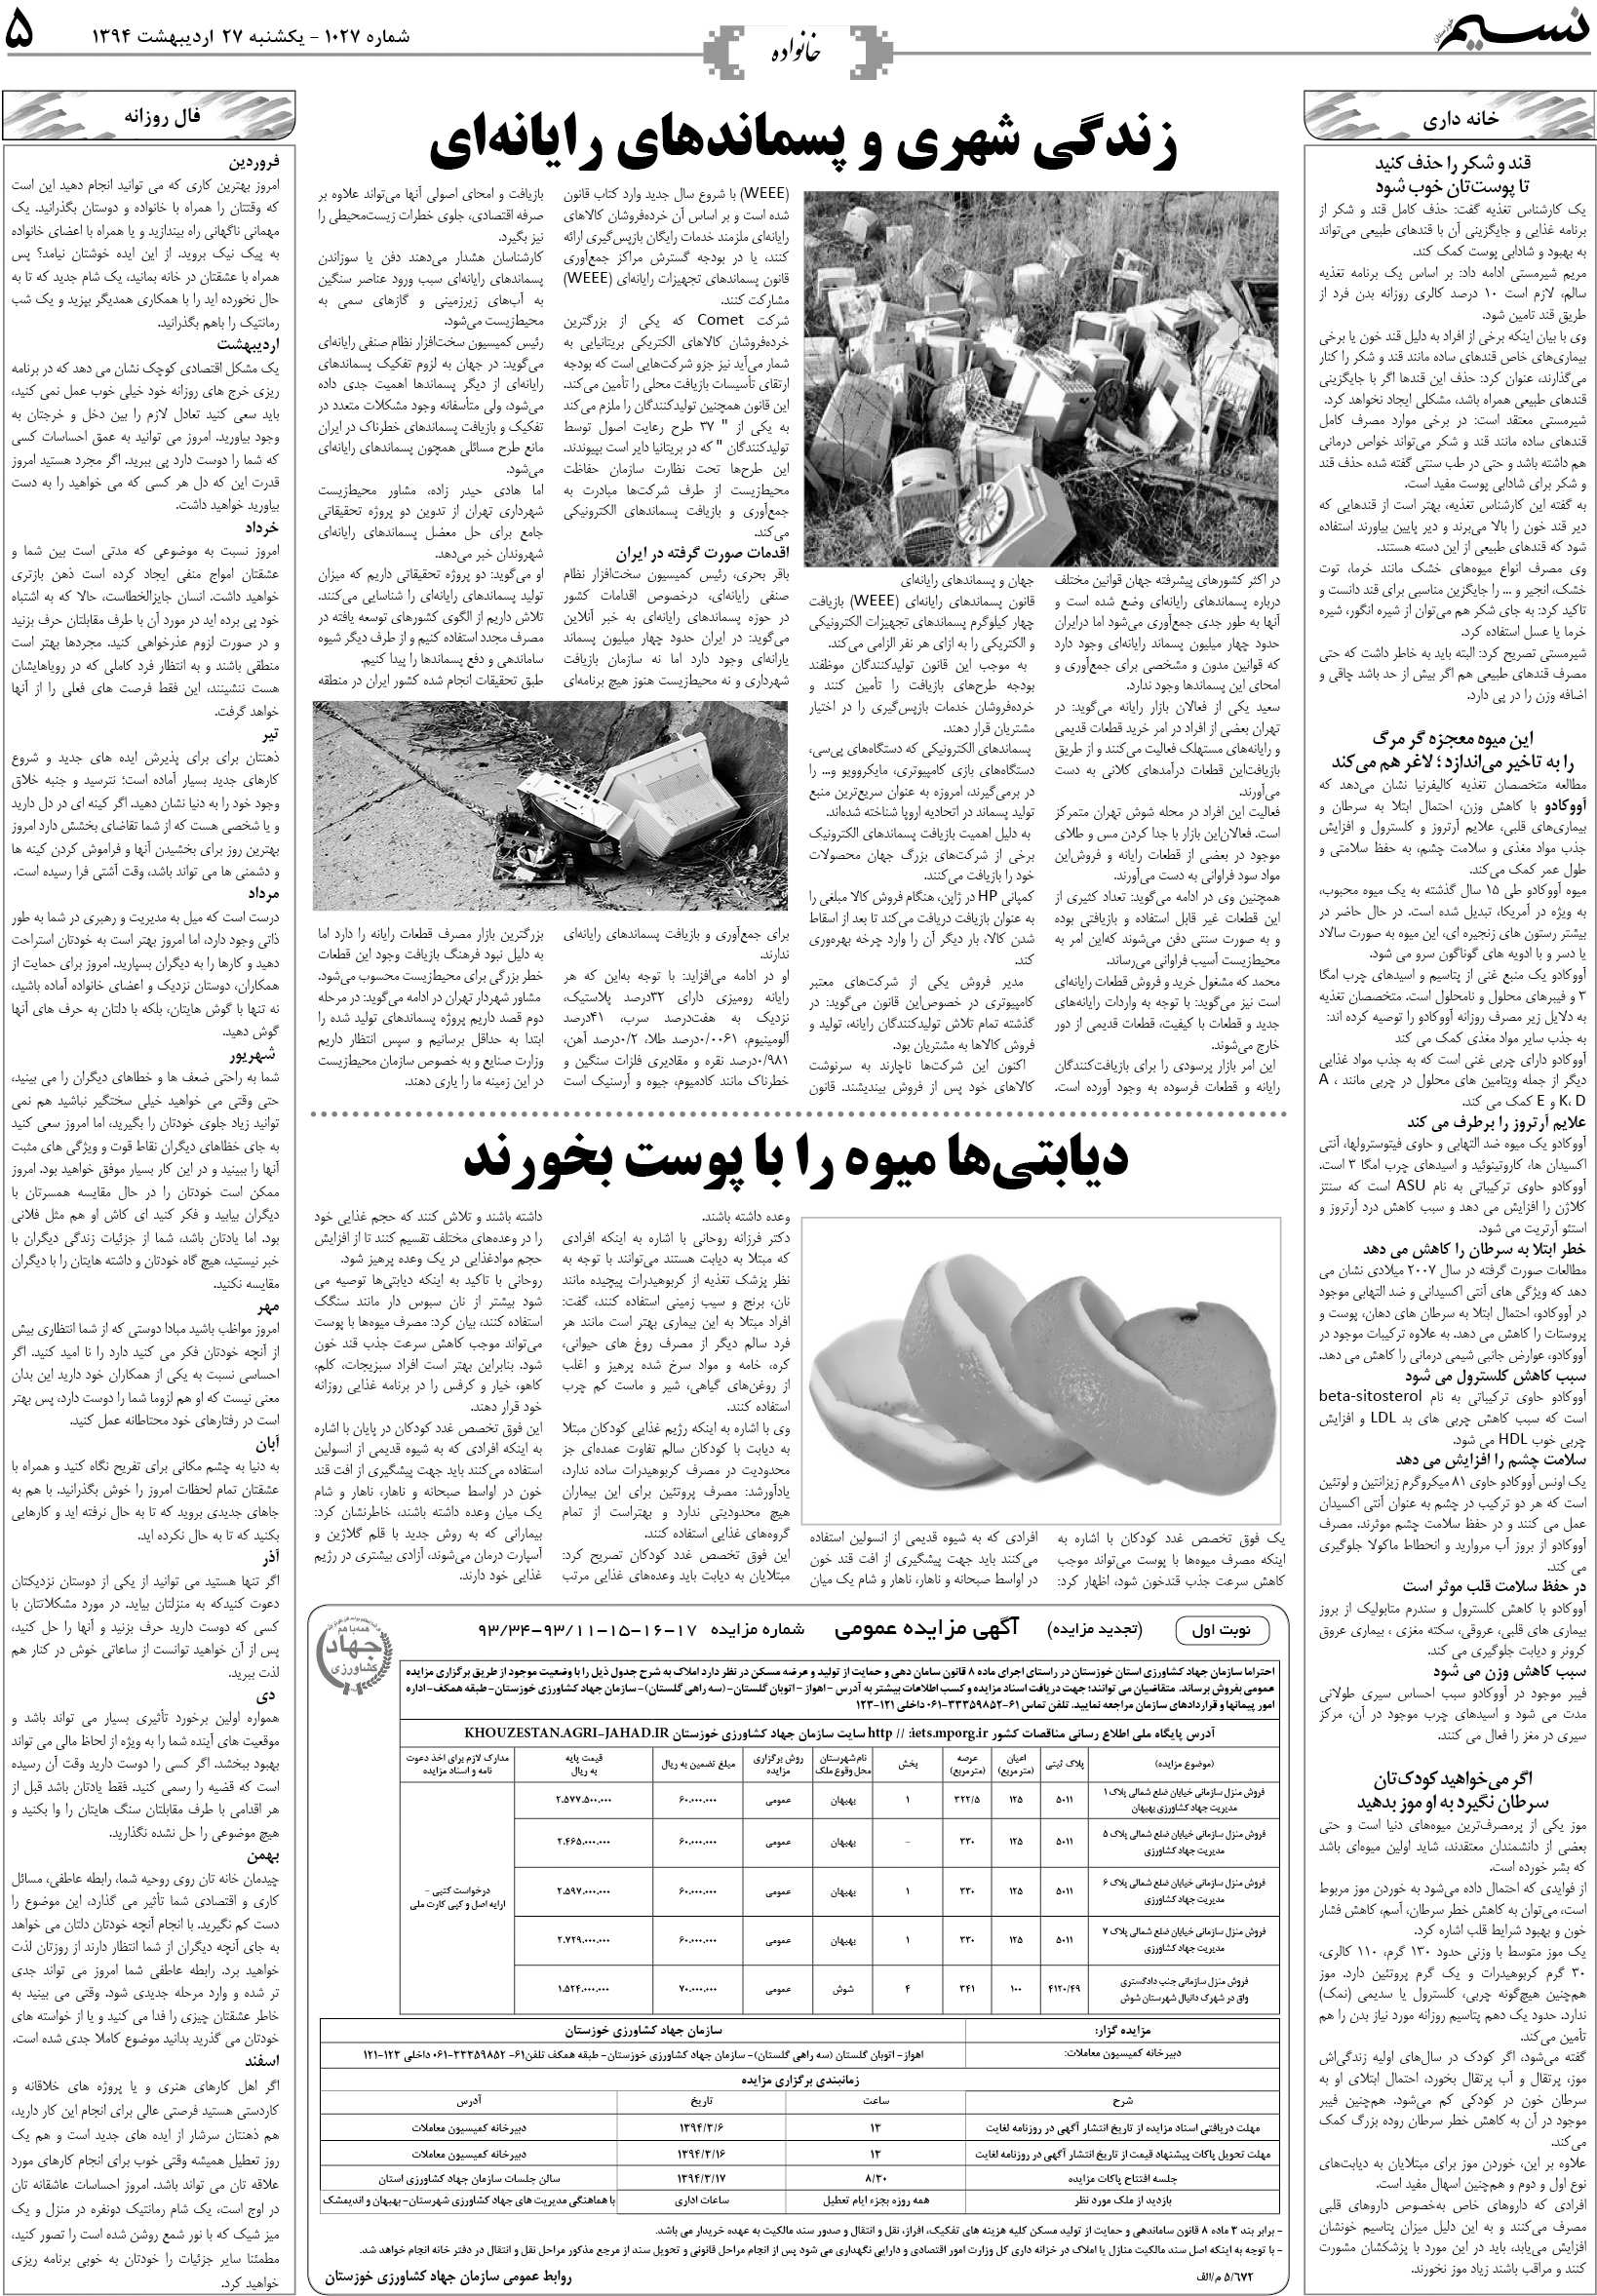 صفحه خانواده روزنامه نسیم شماره 1027